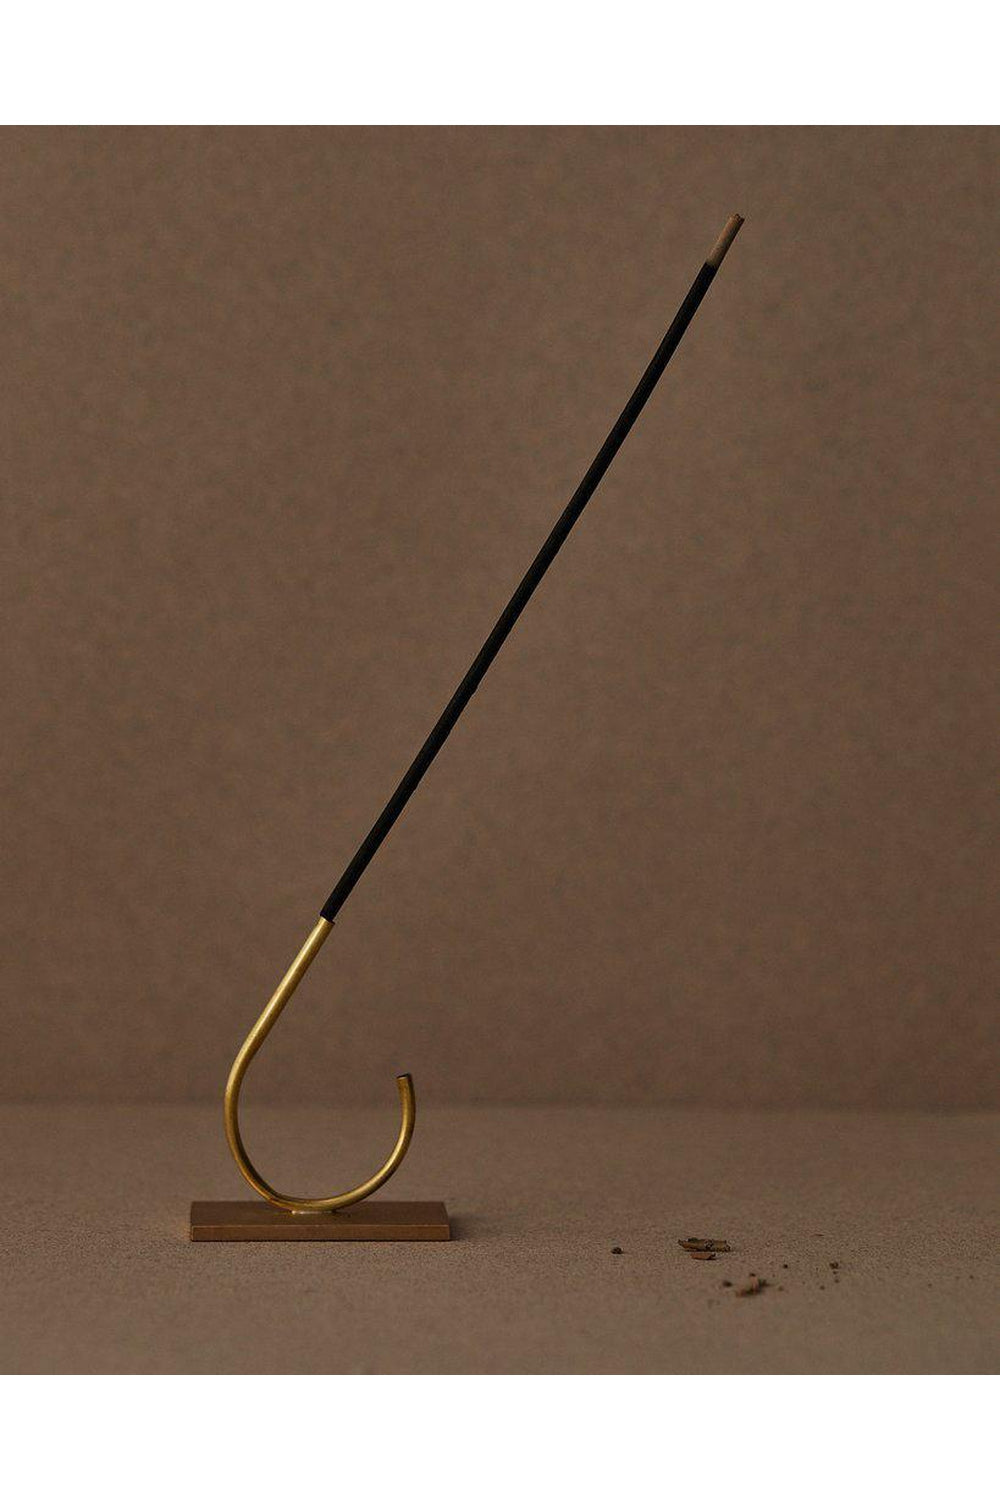 AYU brass incense holder